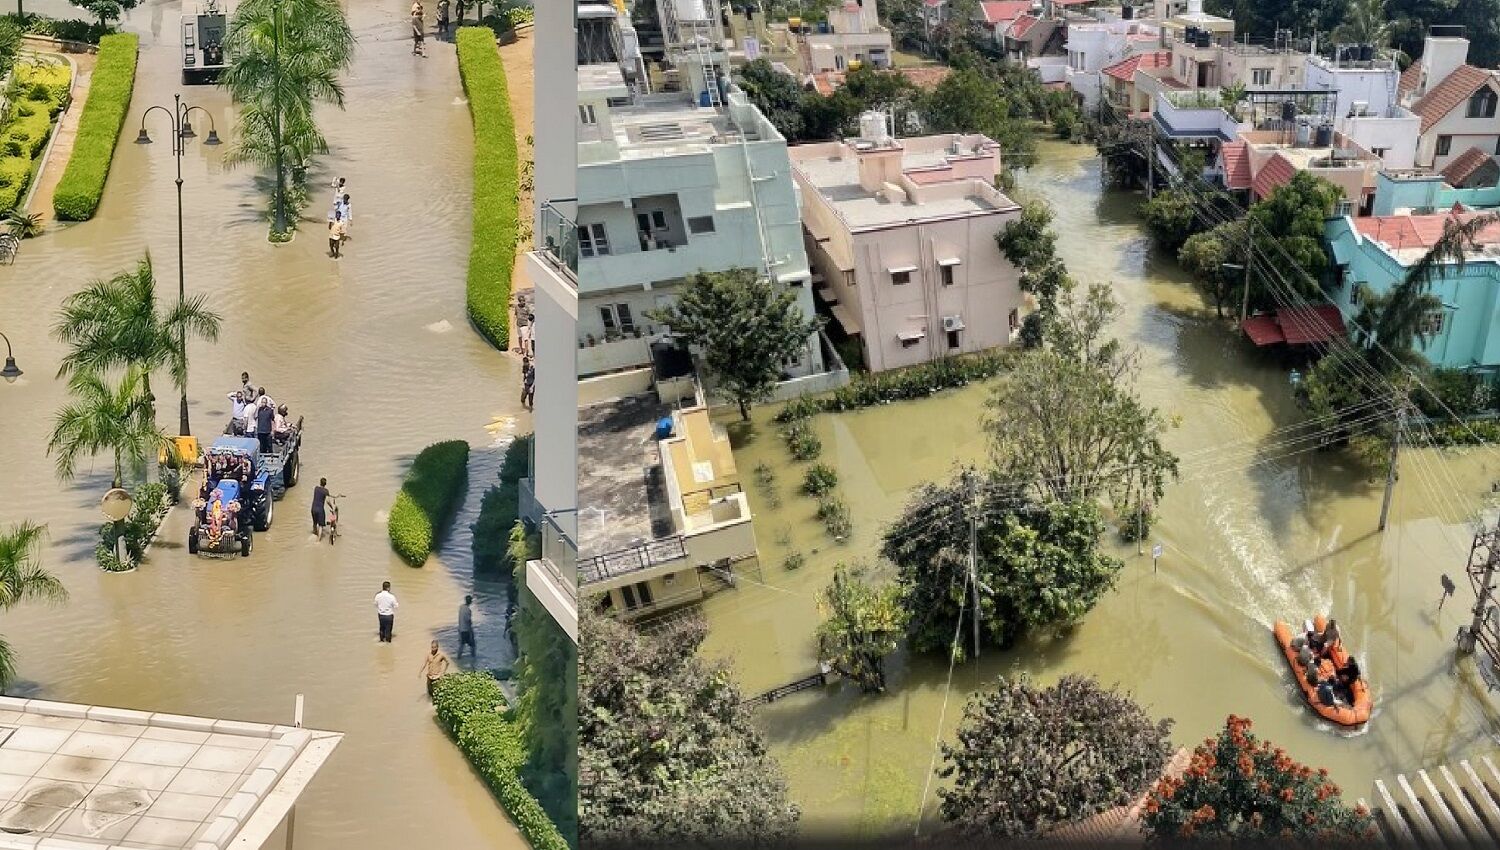 प्रकृति की छाती पर शहरीकरण के नाच का नतीजा है बेंगलुरु बाढ़, 225 करोड़ रुपये से अधिक के नुकसान का आकलन